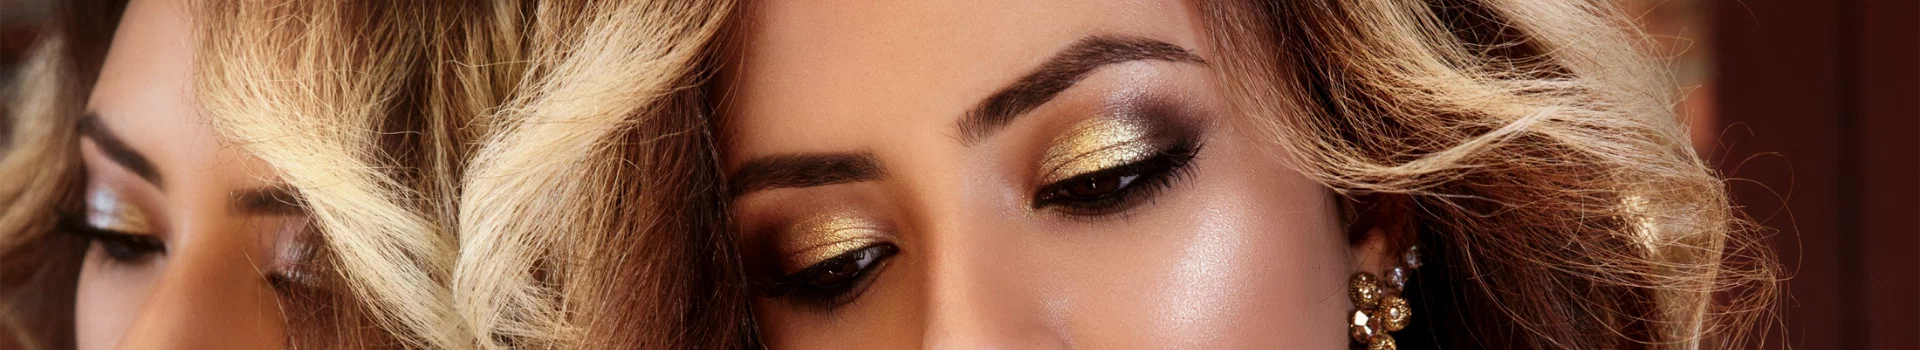 banner - makijaż oczu złote błyszczące cienie